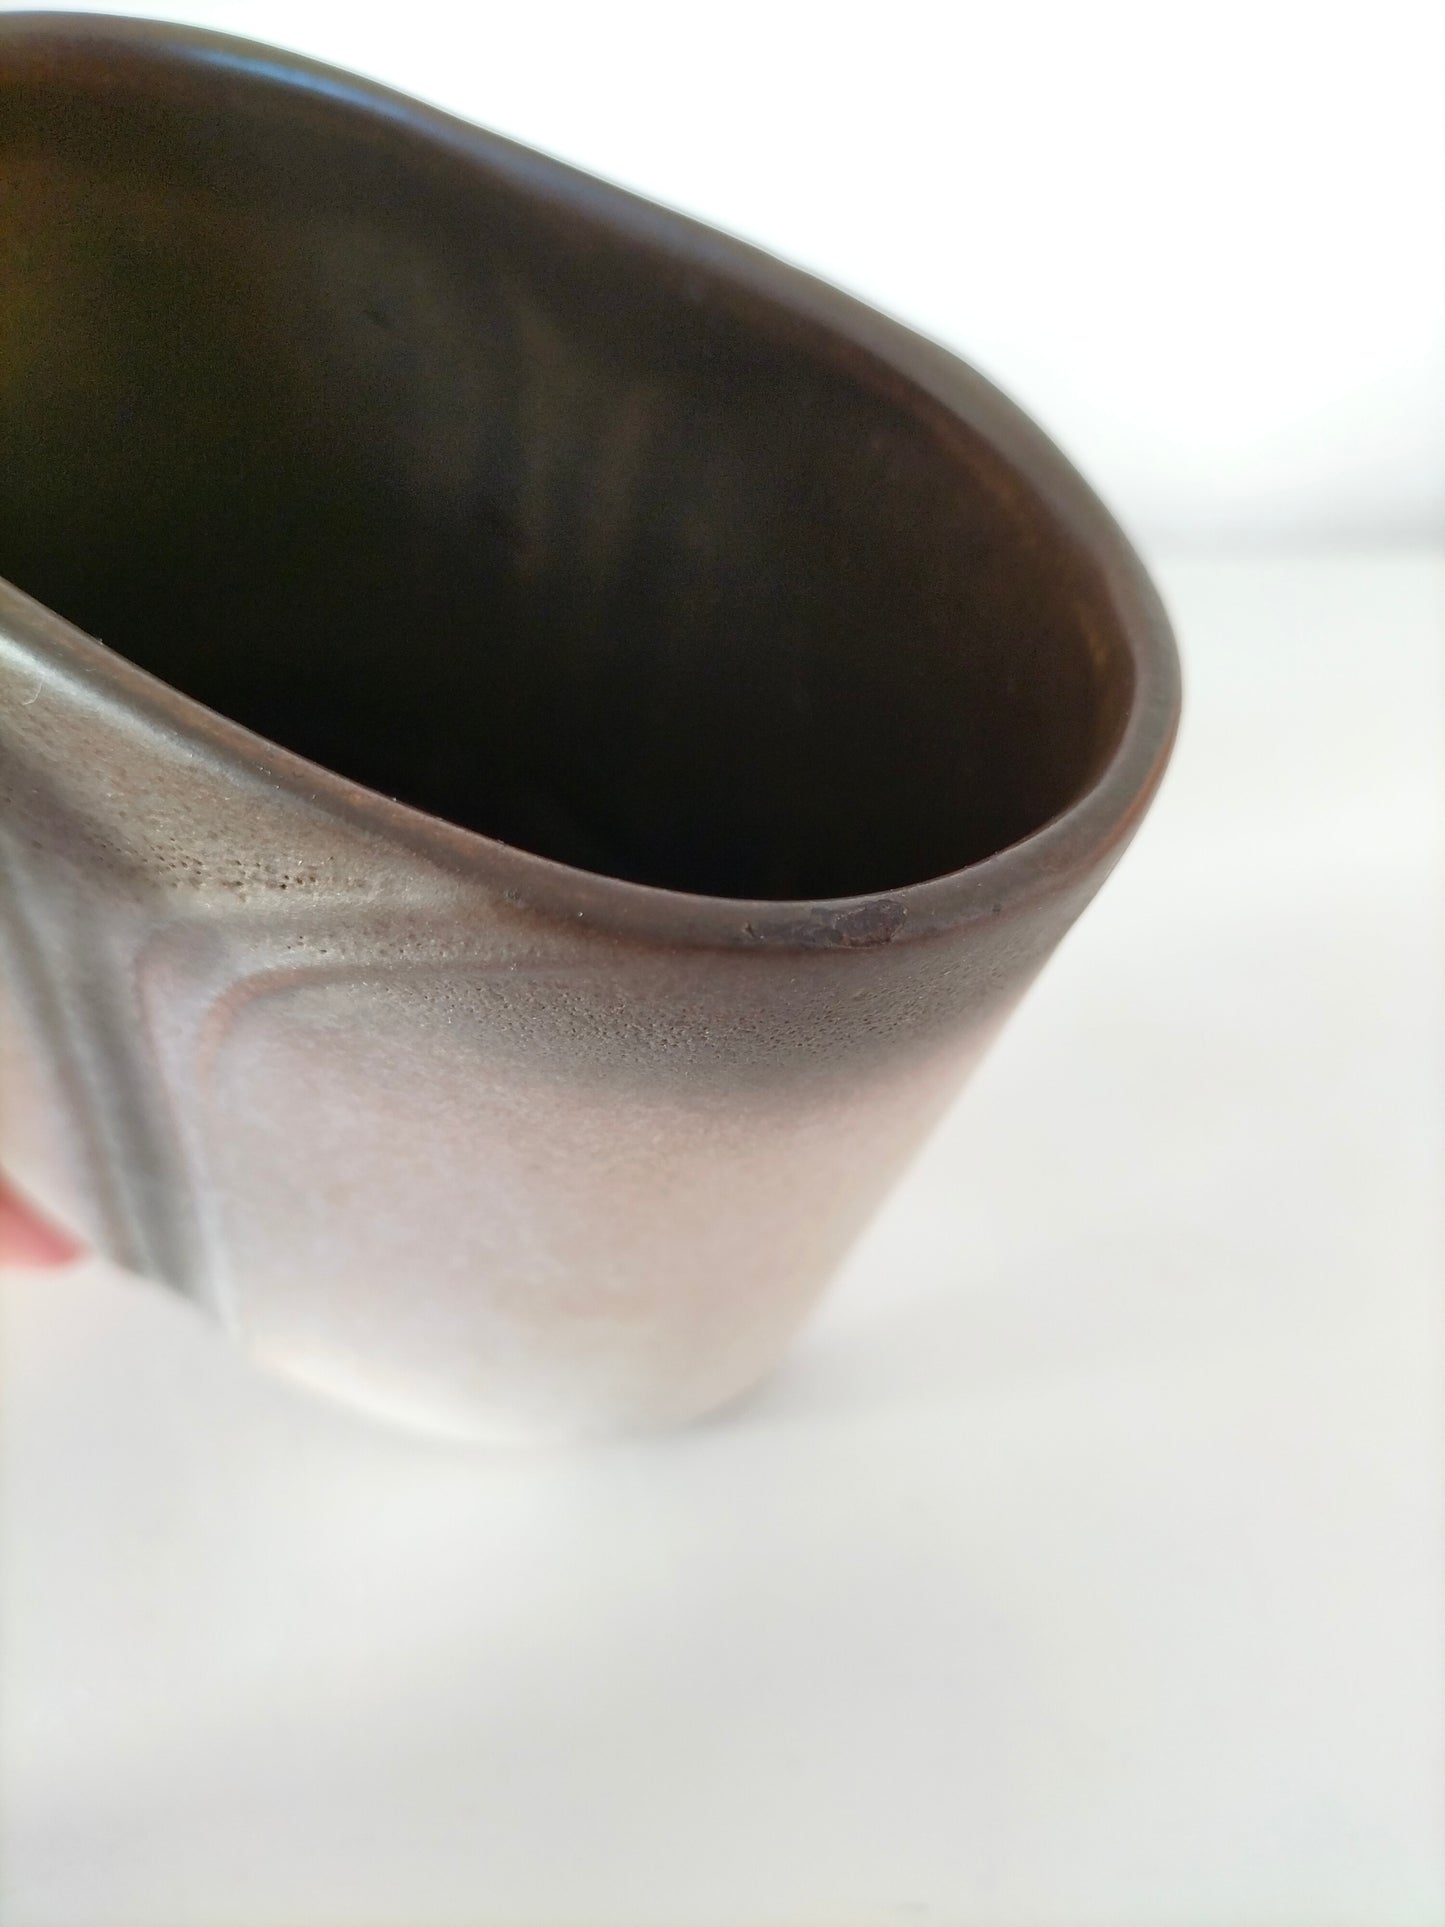 Petit vase/ pot/ photophore en grès au choix